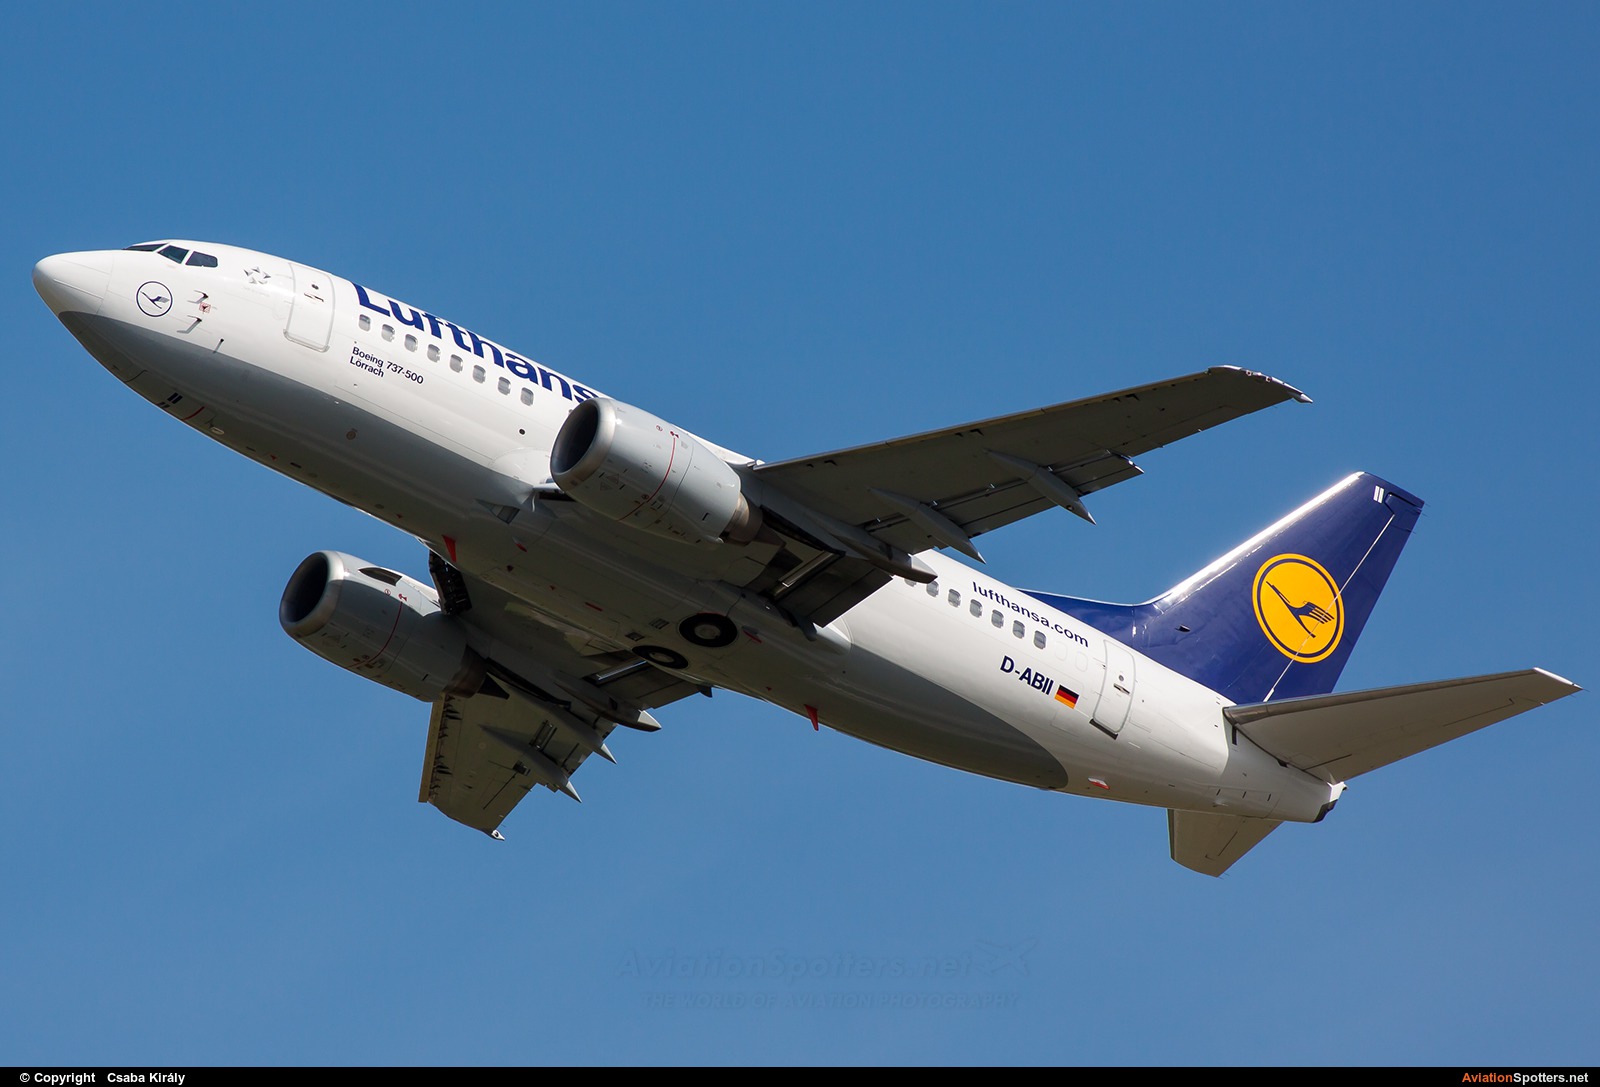 Lufthansa  -  737-500  (D-ABII) By Csaba Király (Csaba Kiraly)